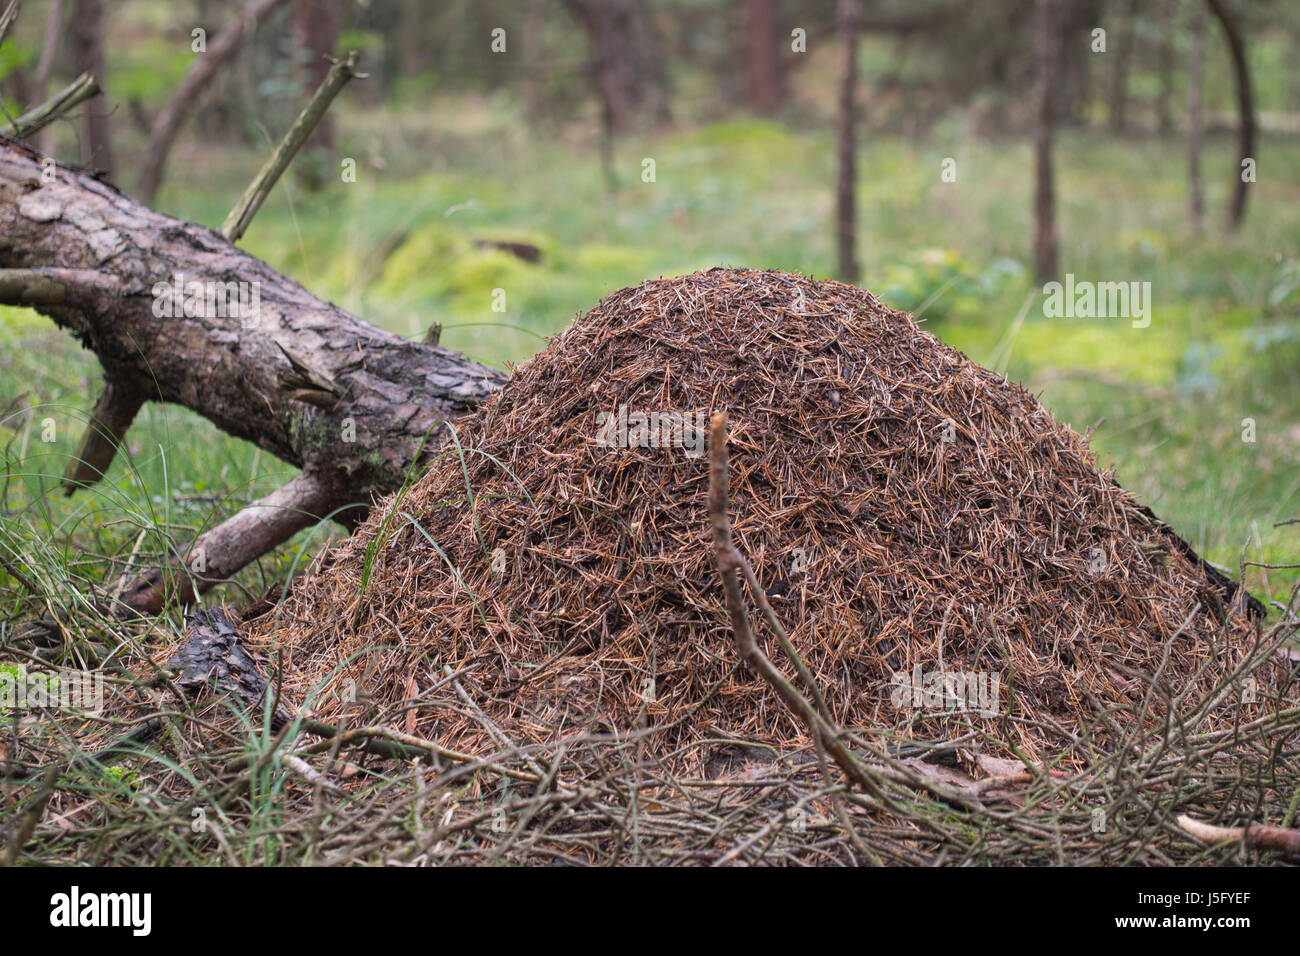 Hormiga de madera roja, hormiguero - Formica rufa Foto de stock